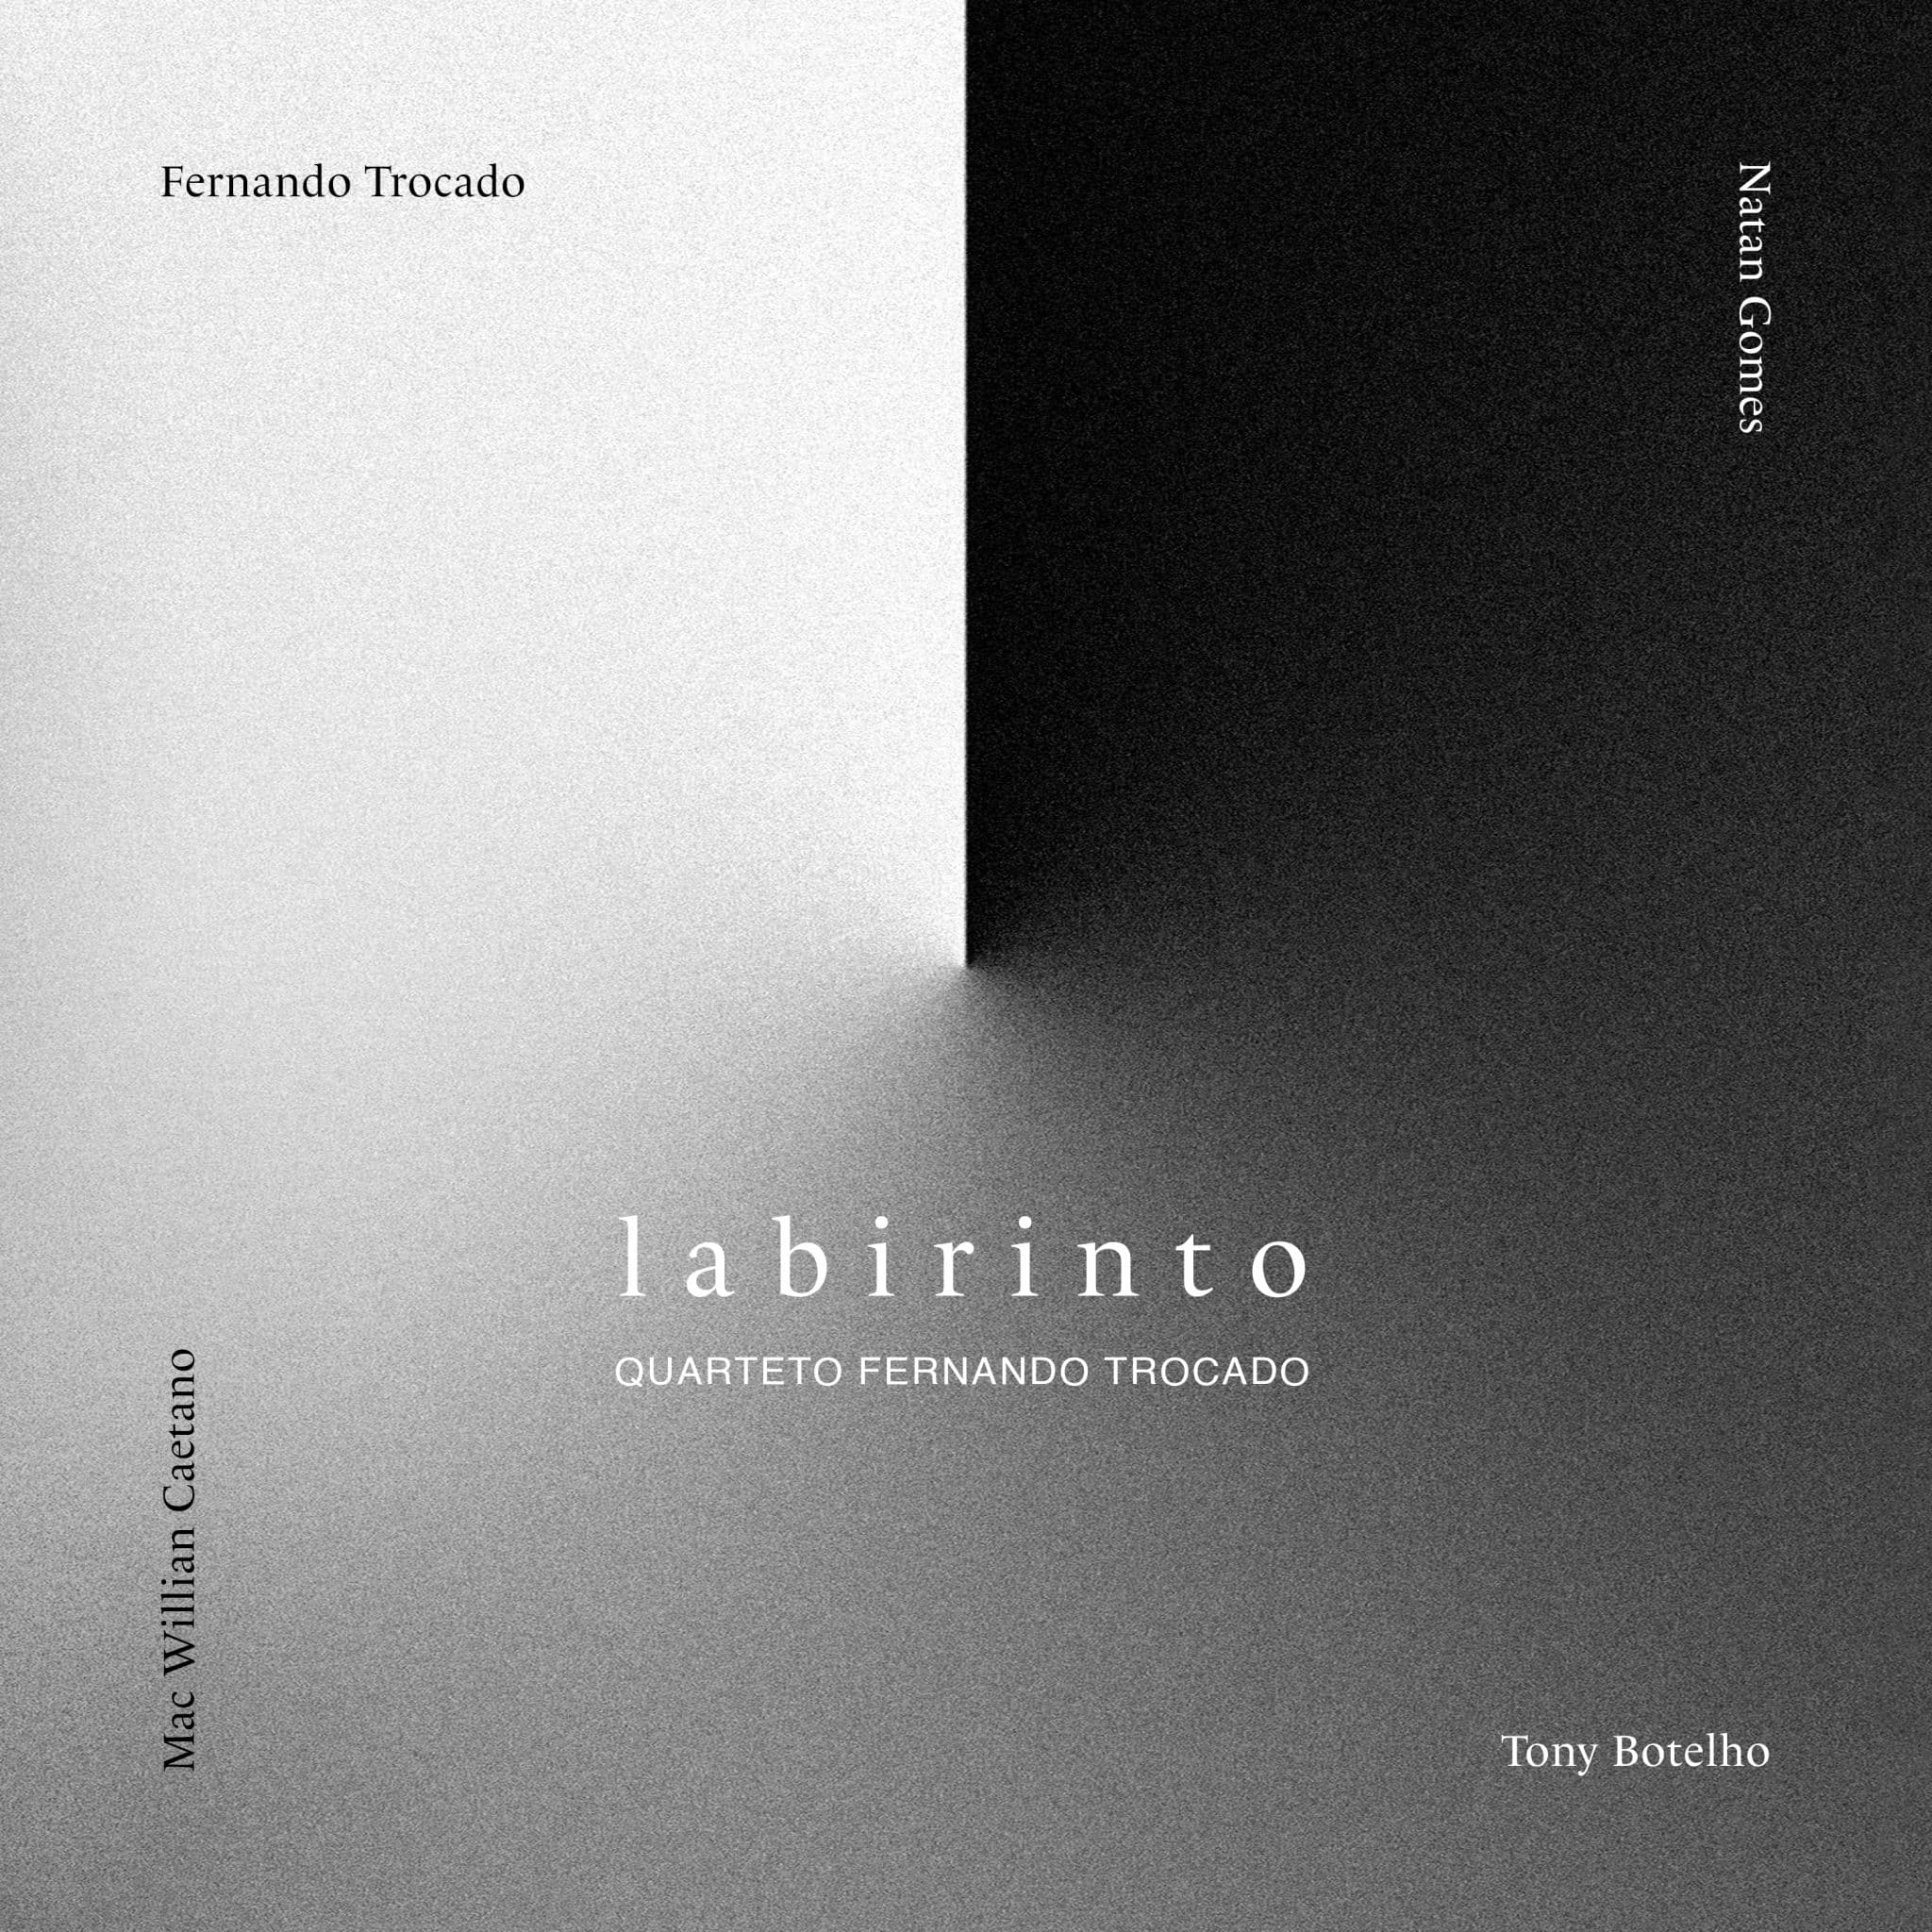 revistaprosaversoearte.com - 'Labirinto', álbum do Quarteto Fernando Trocado